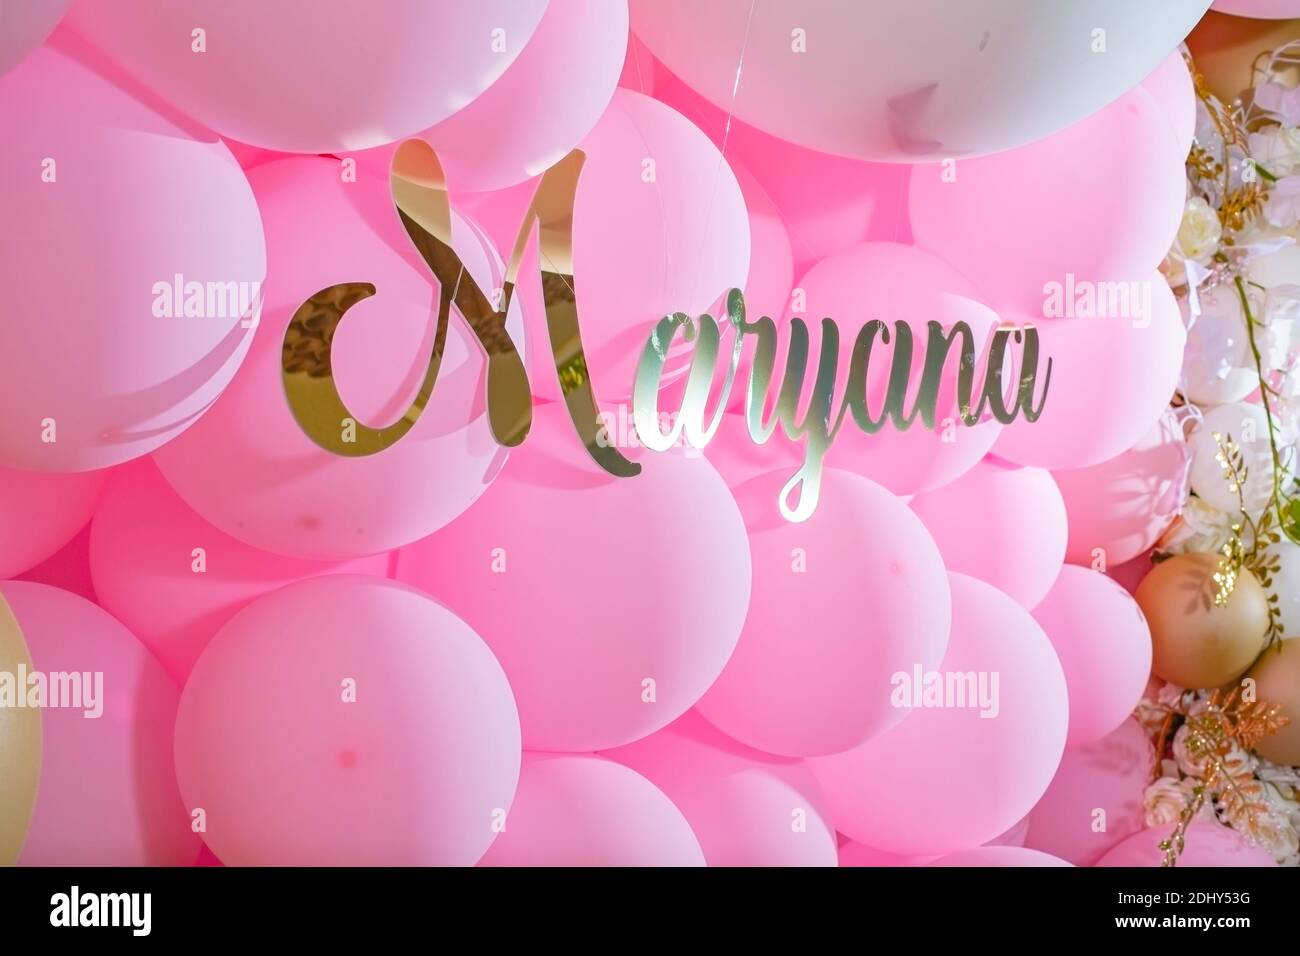 La decoración del restaurante con rosa y oro globos para celebrar el  cumpleaños de la chica. El nombre Marianna está escrito en letras doradas  Fotografía de stock - Alamy